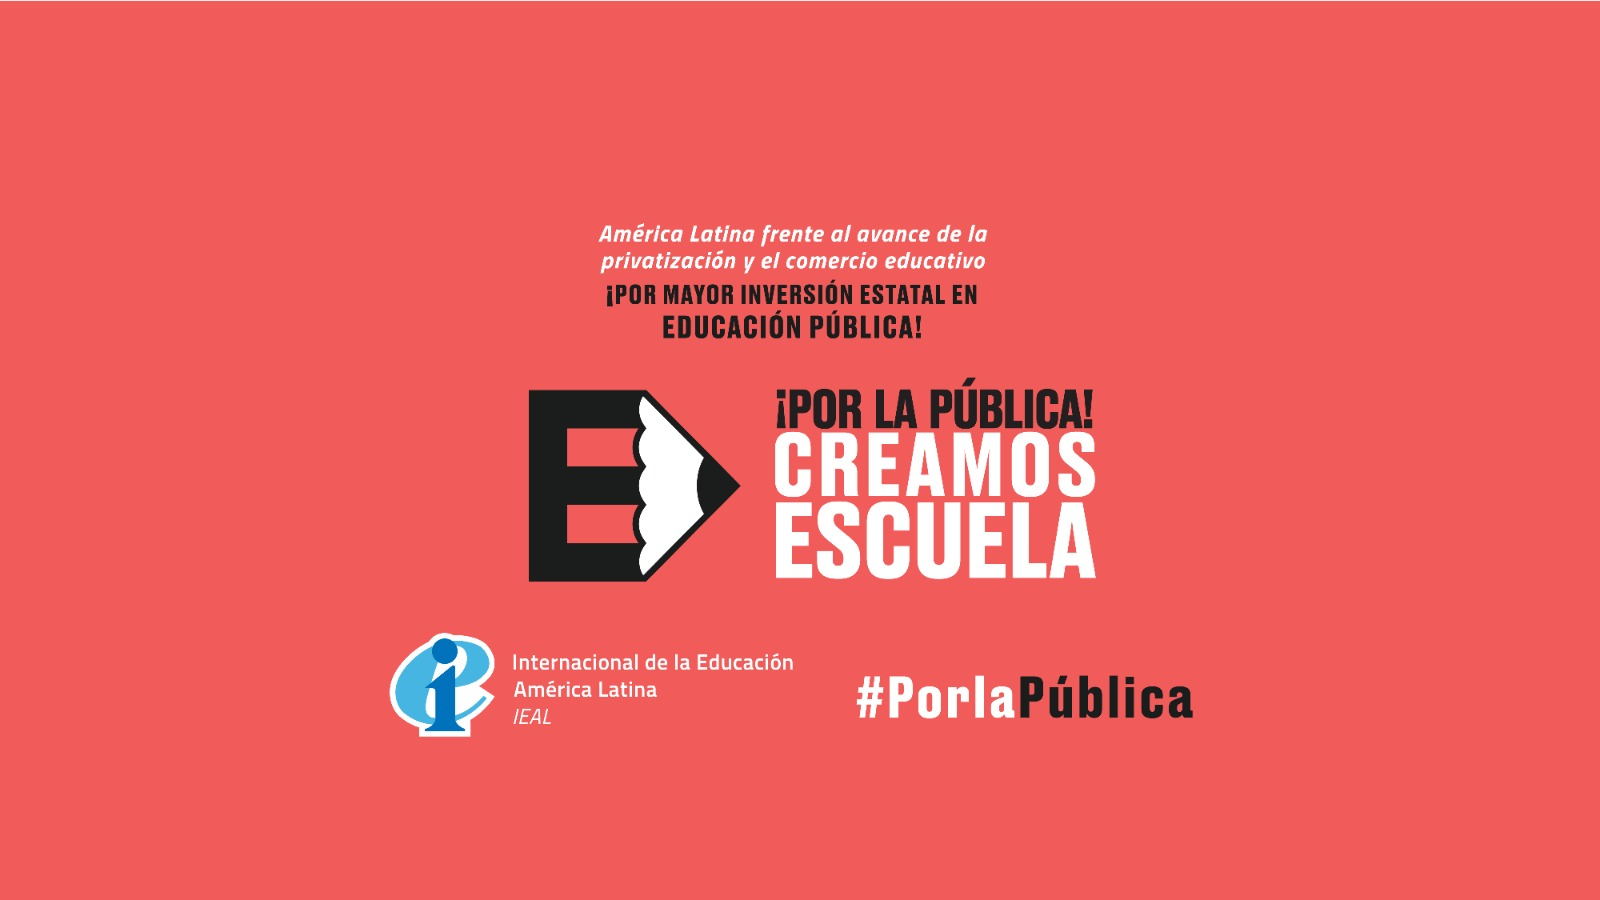 ¡Por la Pública! Creamos Escuela. Materiales de la campaña para América Latina